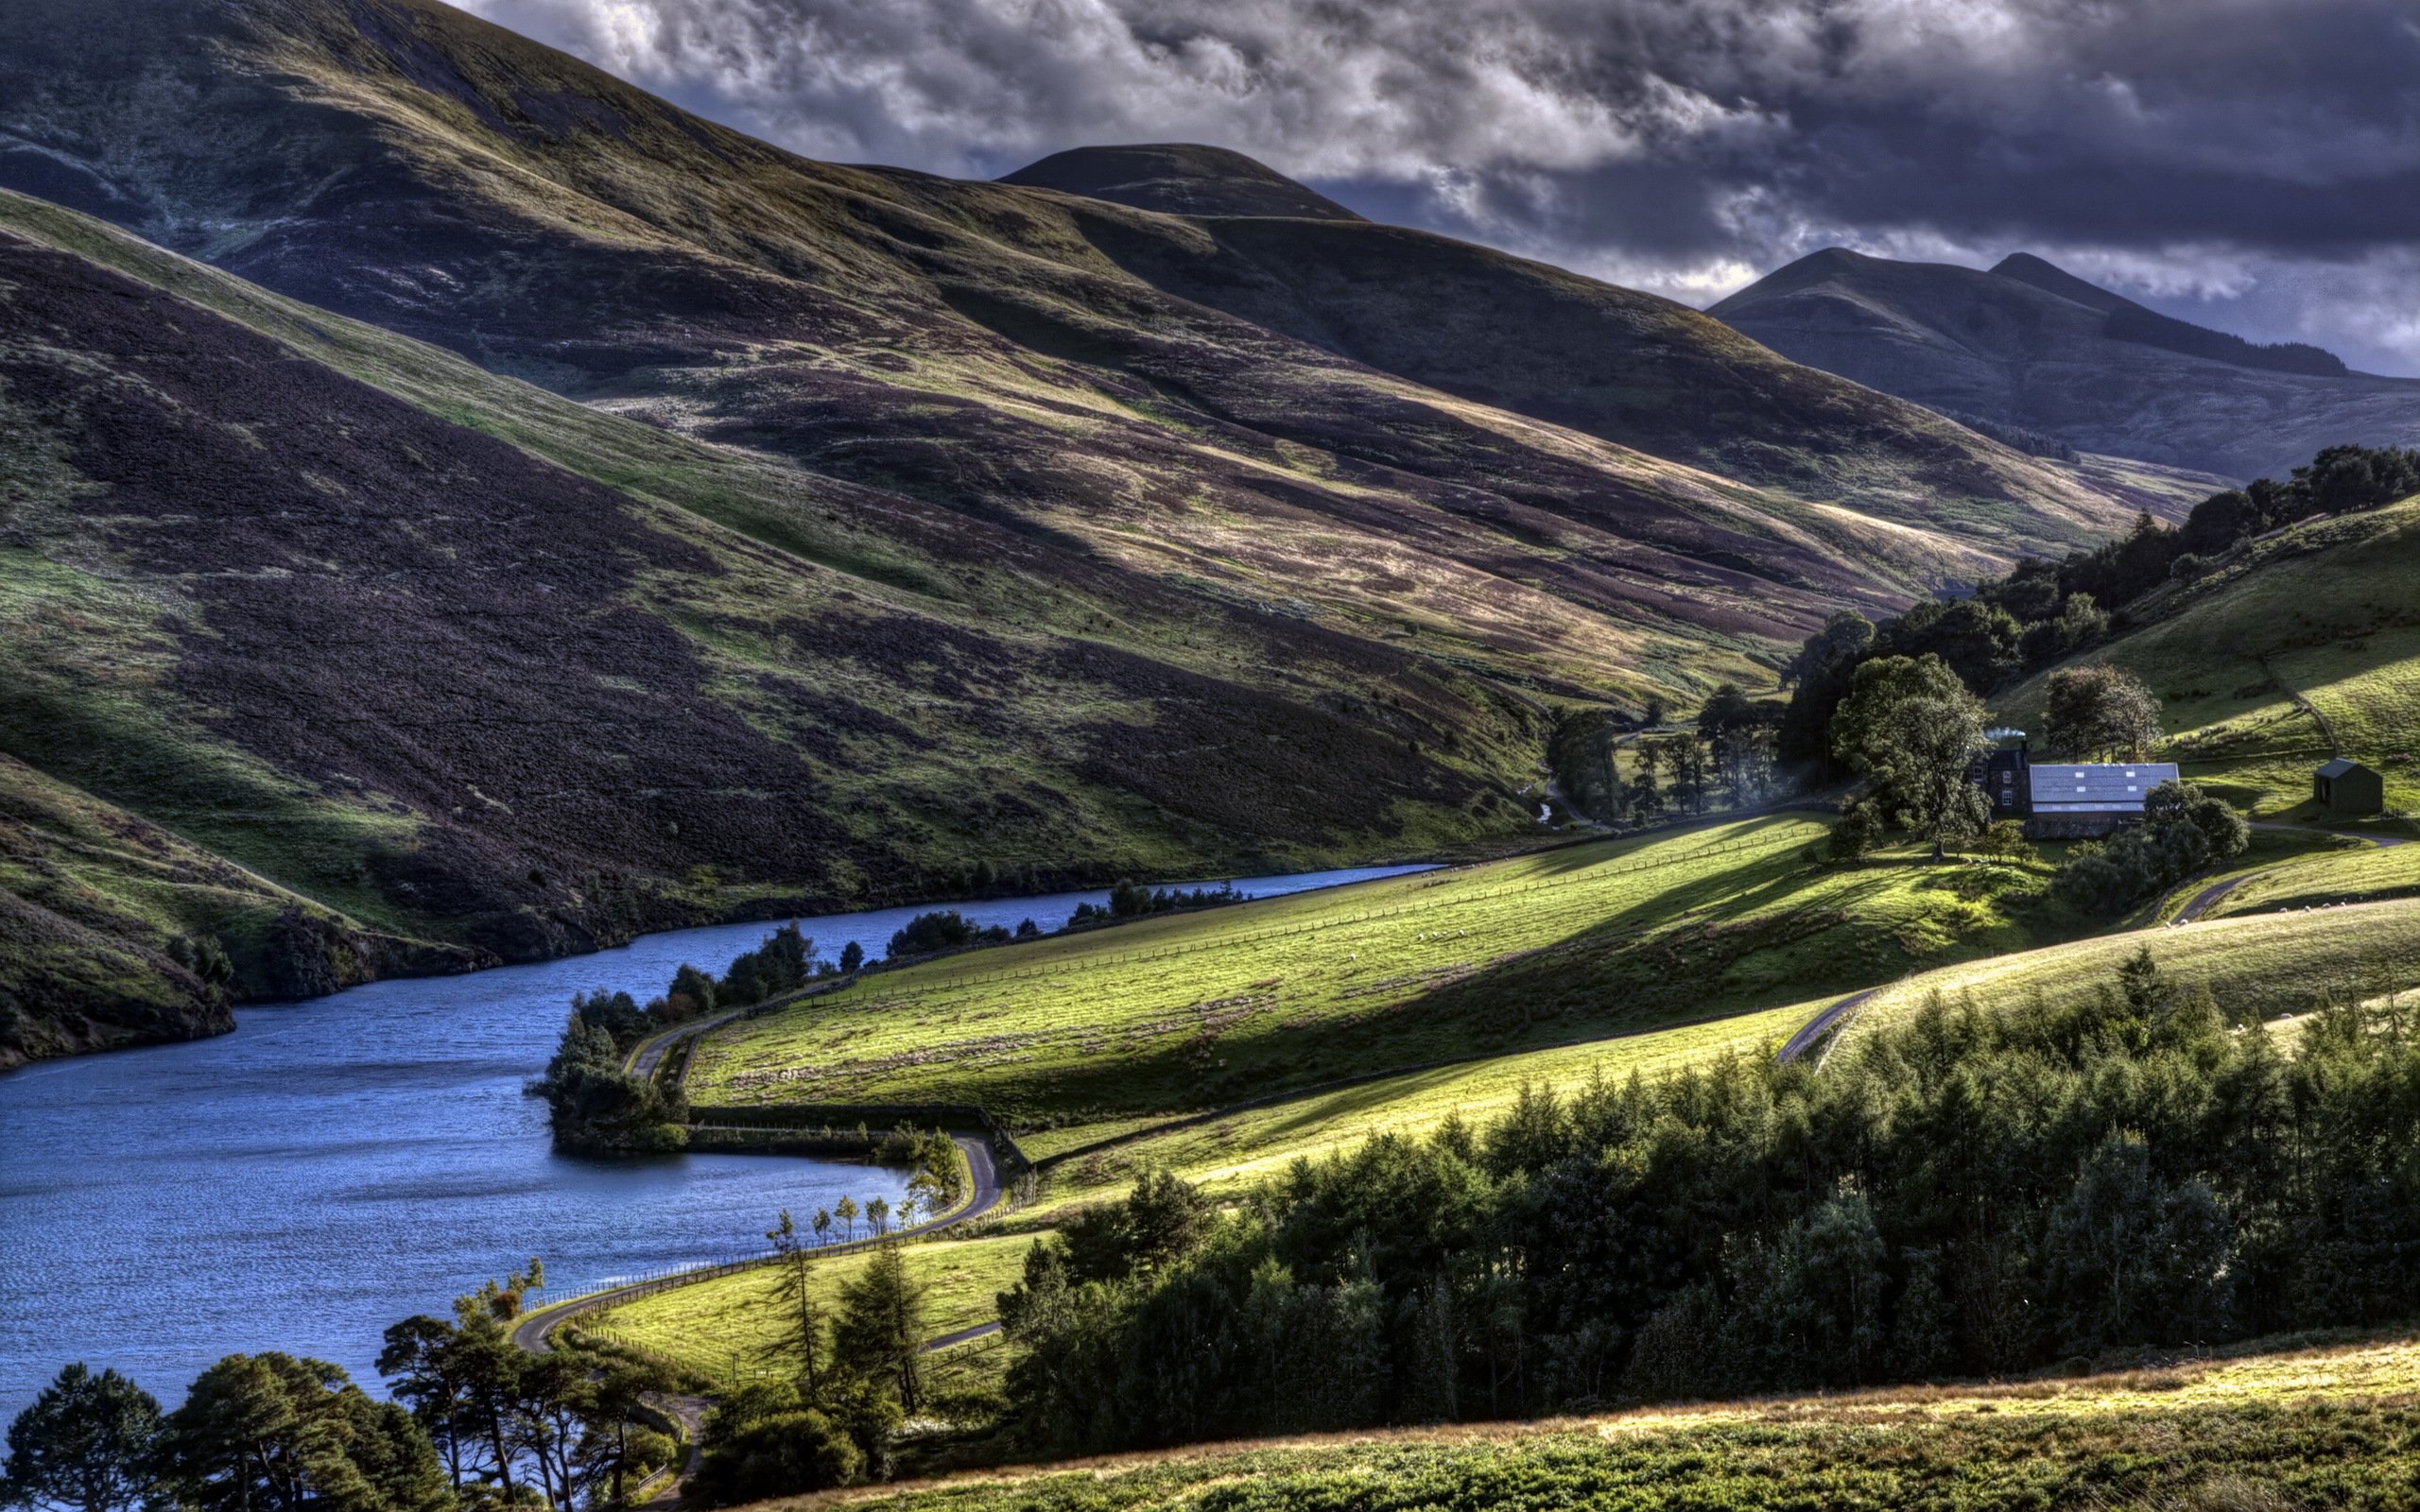 Scotland nature reserves. Холмы Шотландии. Hill Farm Шотландия. Кейтнесс Шотландия. Clyde Valley в Шотландии.